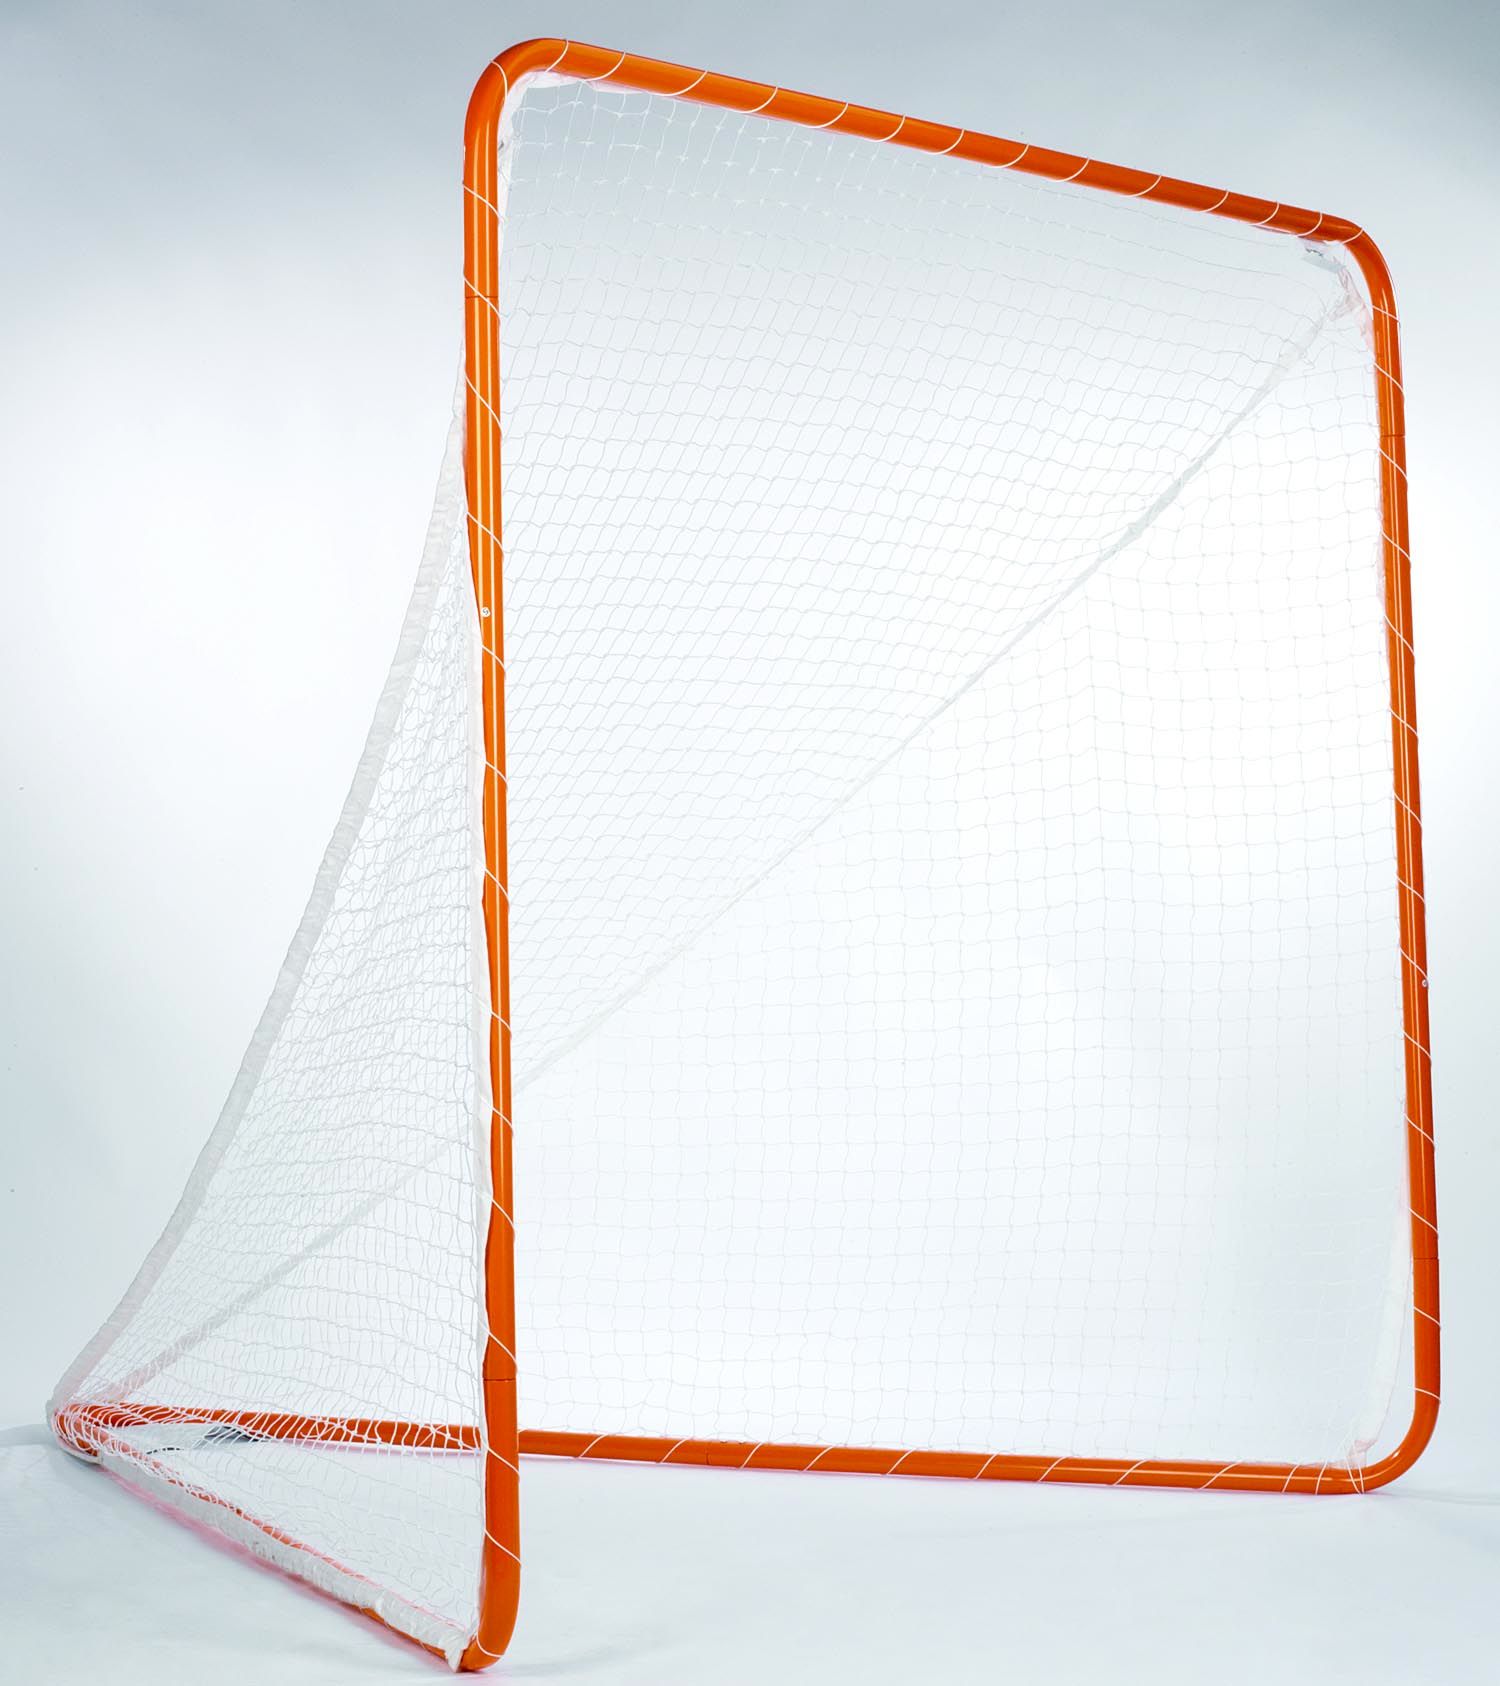 STX 6 x 6 Backyard Field Lacrosse Goal with Mesh 